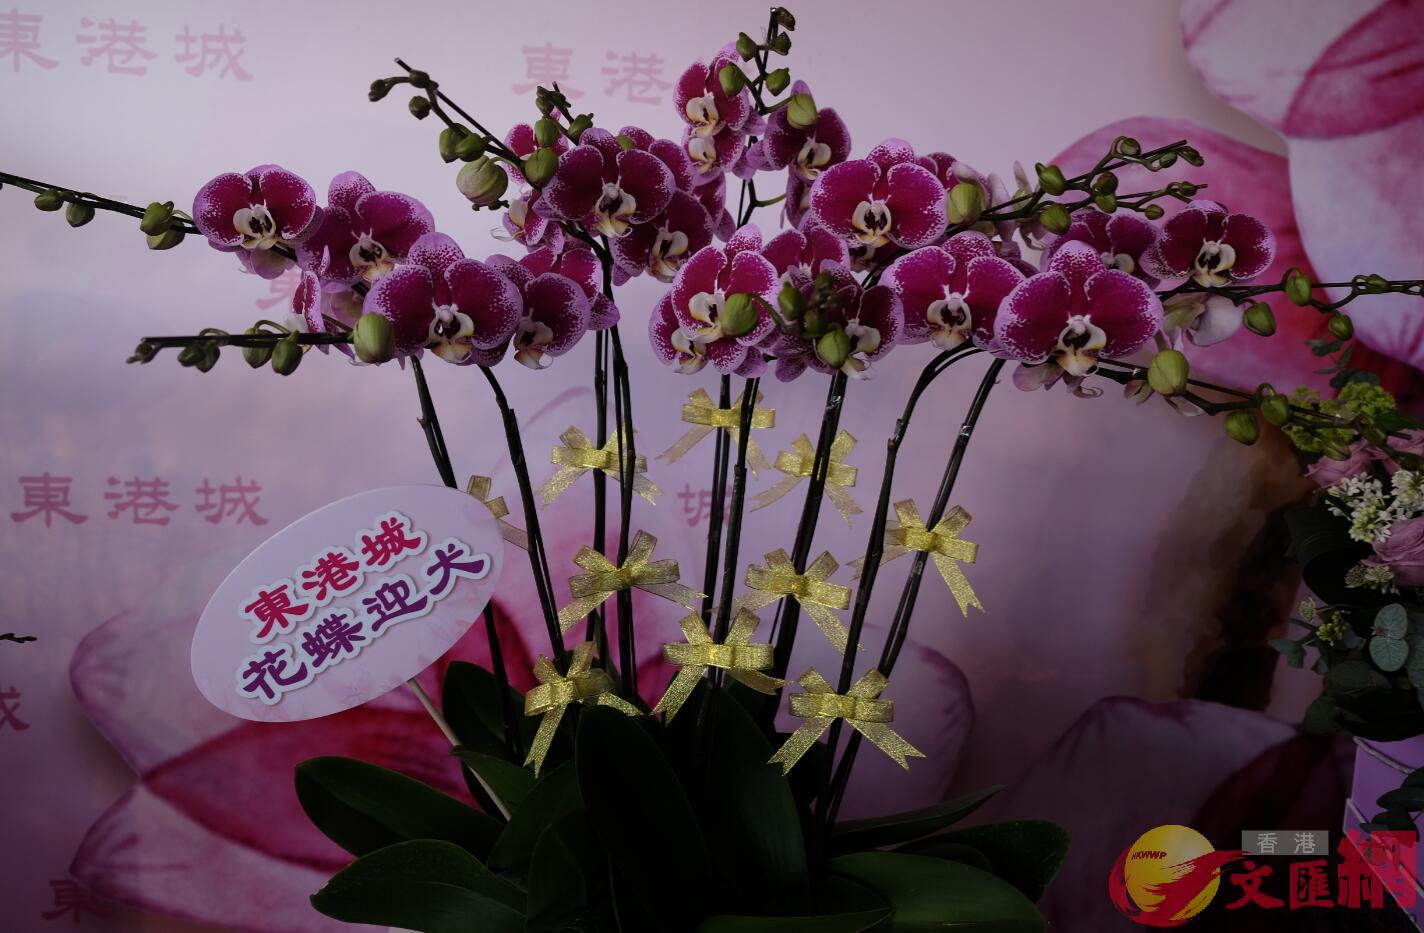 香港蘭花大王楊小龍培育的新品種蝴蝶蘭「花蝶迎犬」。